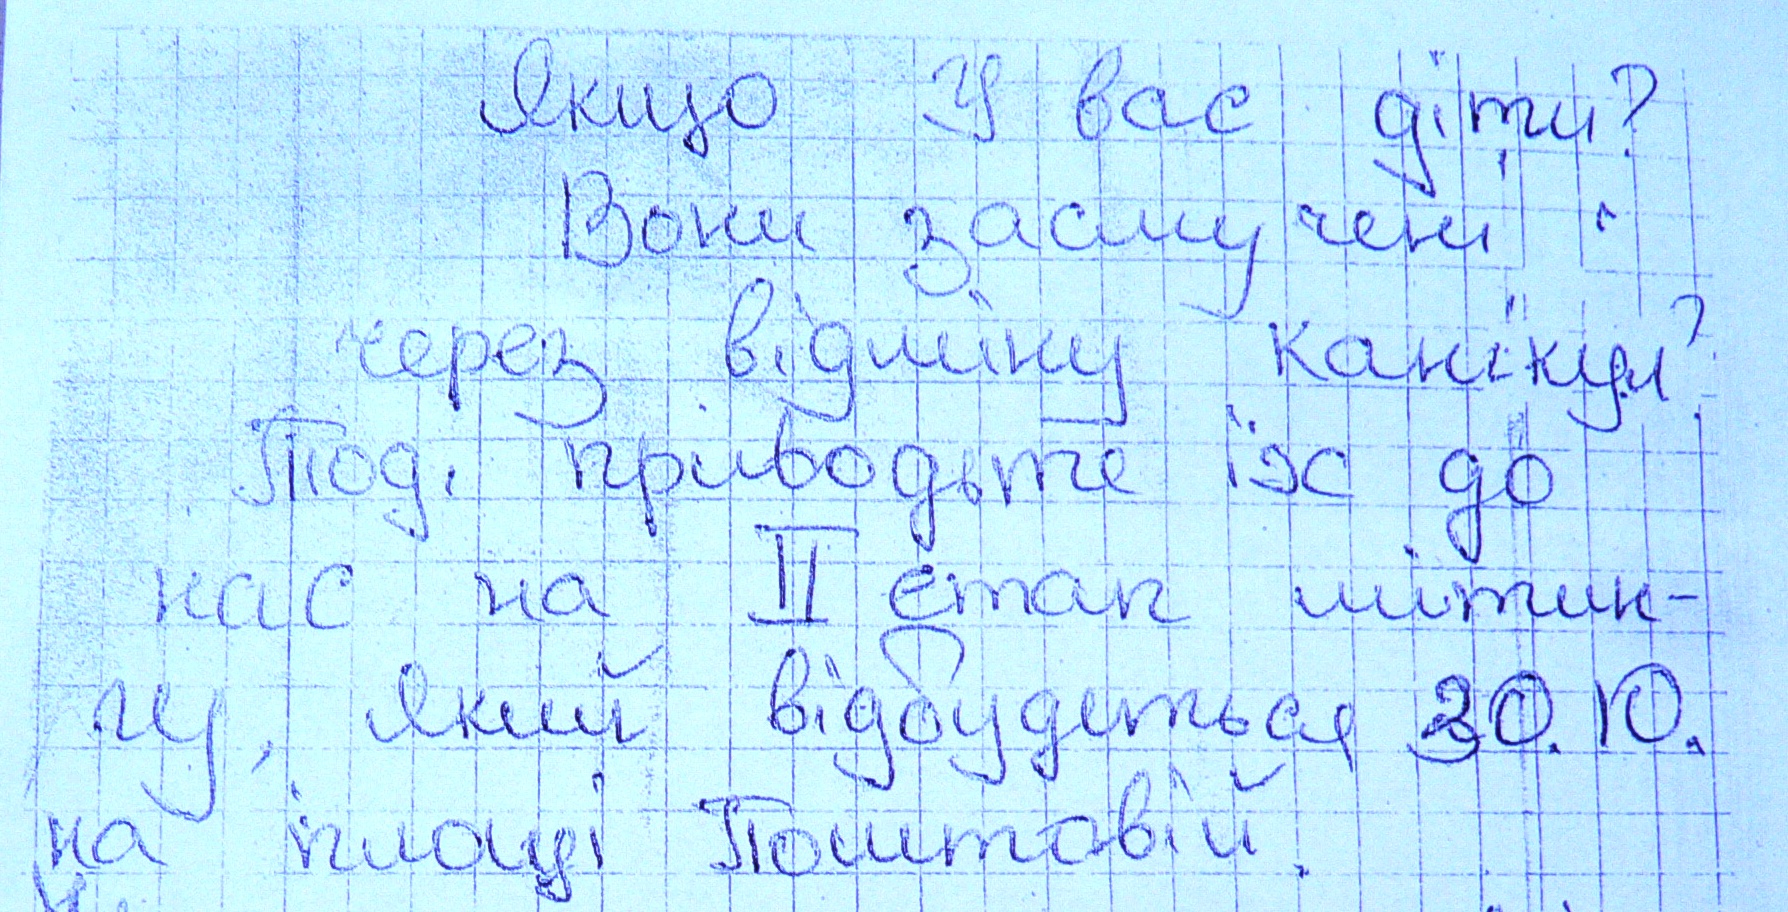 Ужгородські школярі збираються чекати "канікульного" рішення виконкому завтра під стінами мерії